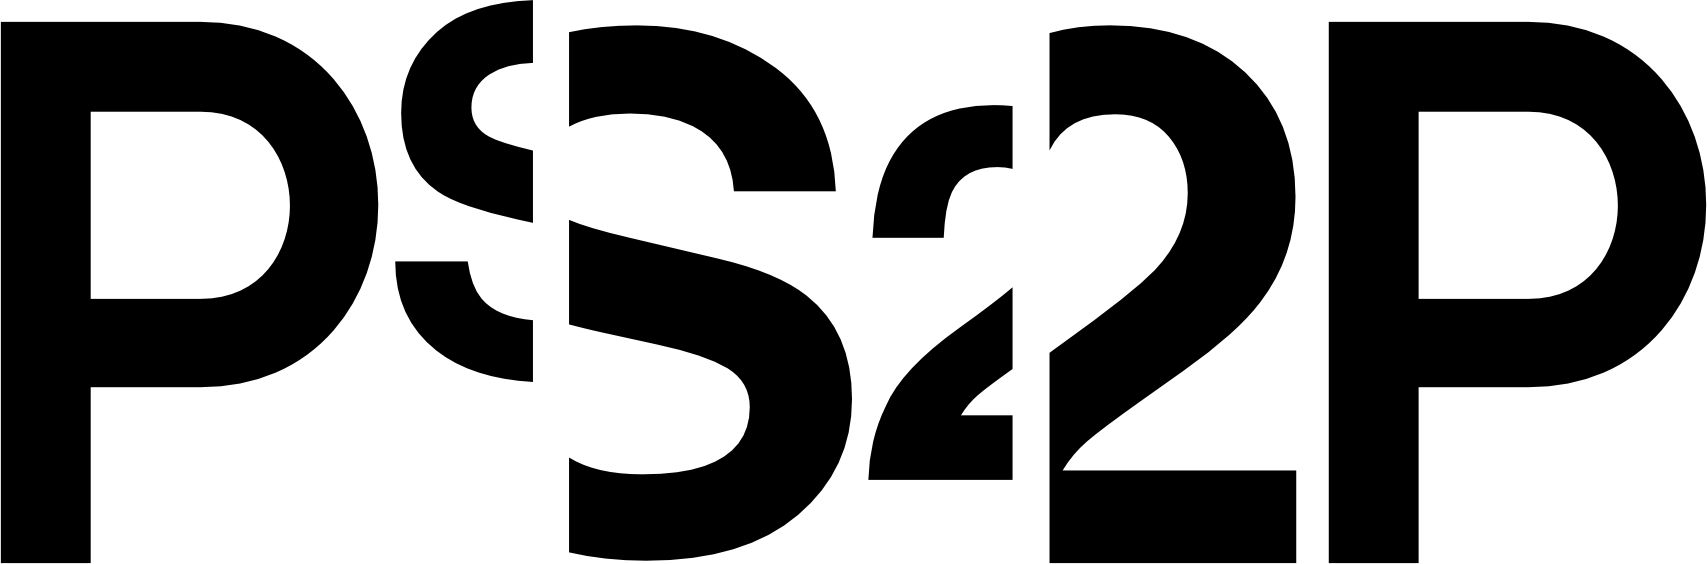 Logo Ps2P Positivo